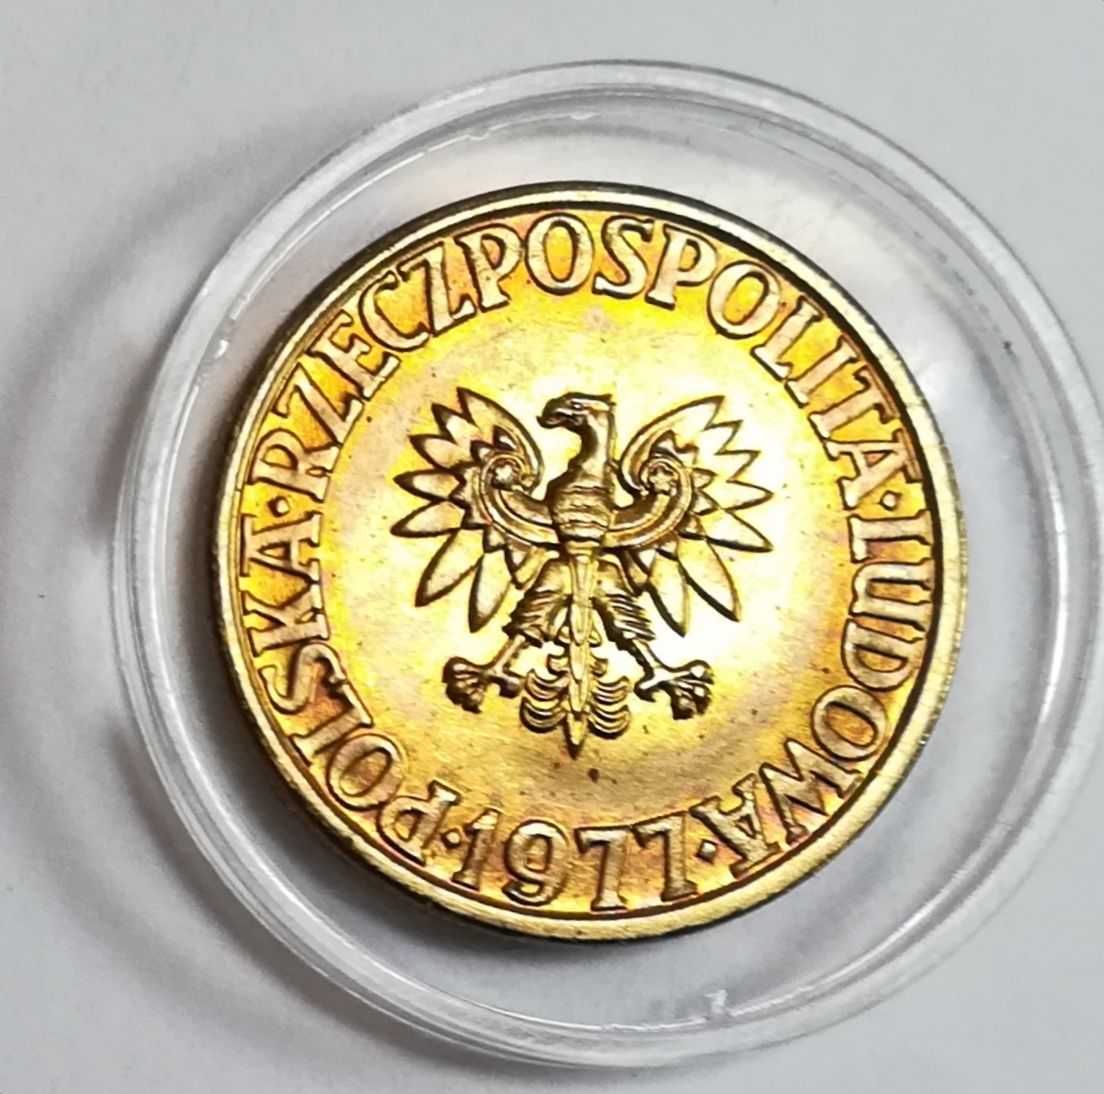 Moneta 5 zł bez znaku mennicy 1977r. Stan doskonały